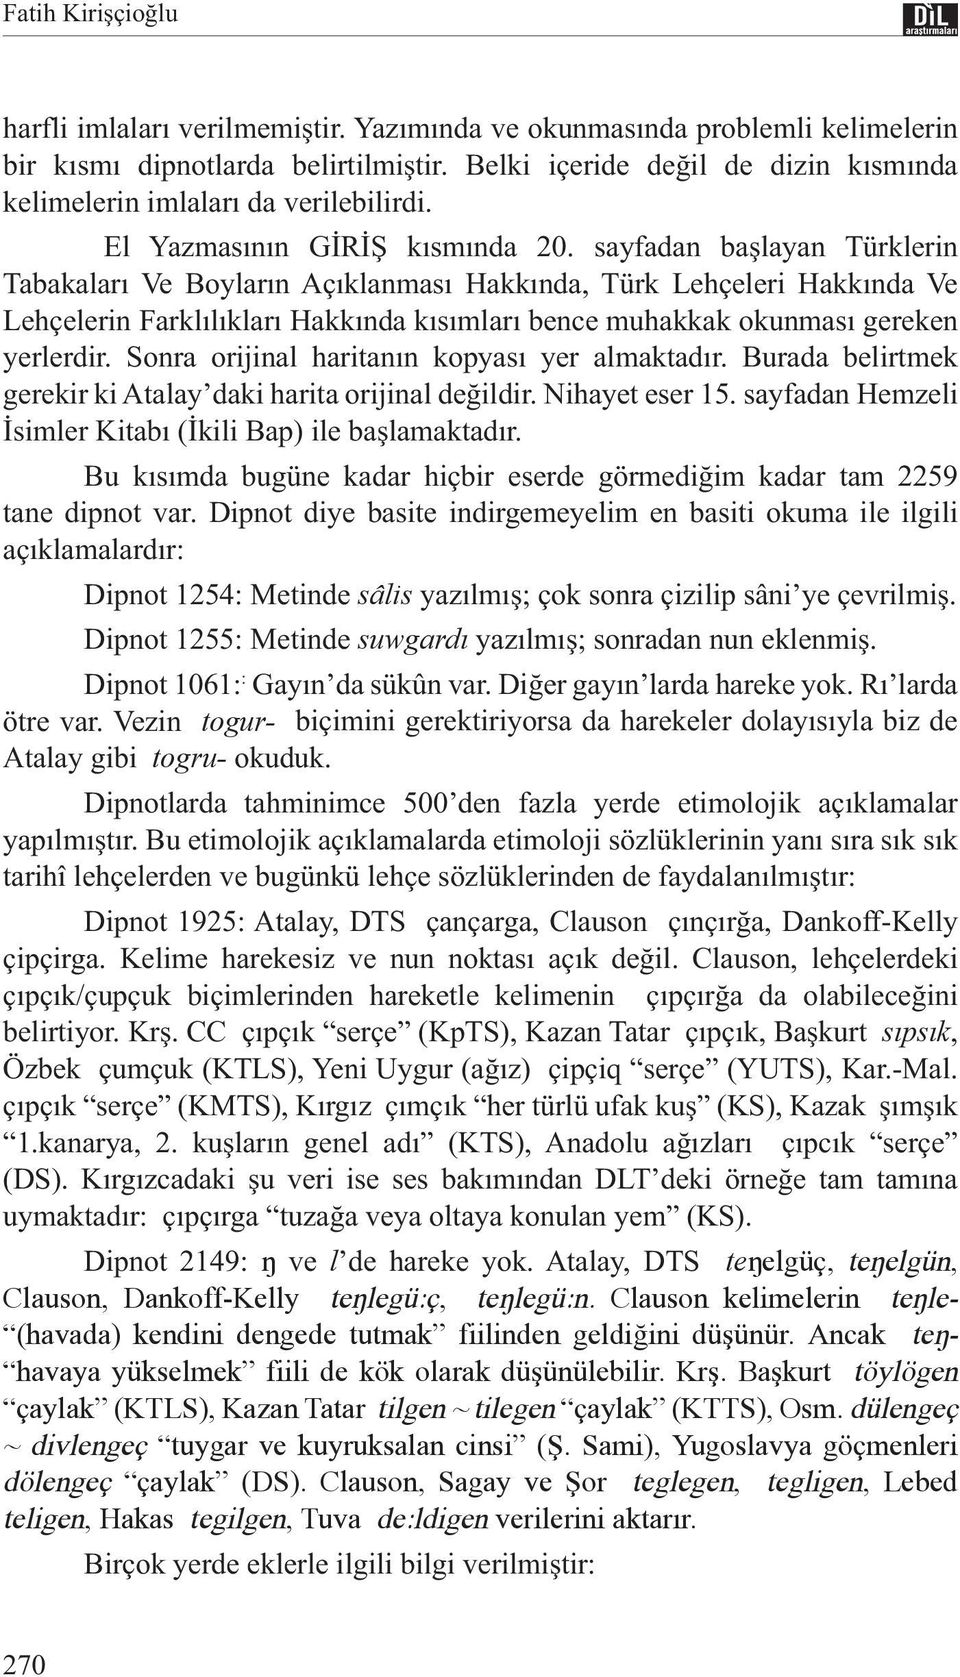 sayfadan başlayan Türklerin Tabakaları Ve Boyların Açıklanması Hakkında, Türk Lehçeleri Hakkında Ve Lehçelerin Farklılıkları Hakkında kısımları bence muhakkak okunması gereken yerlerdir.